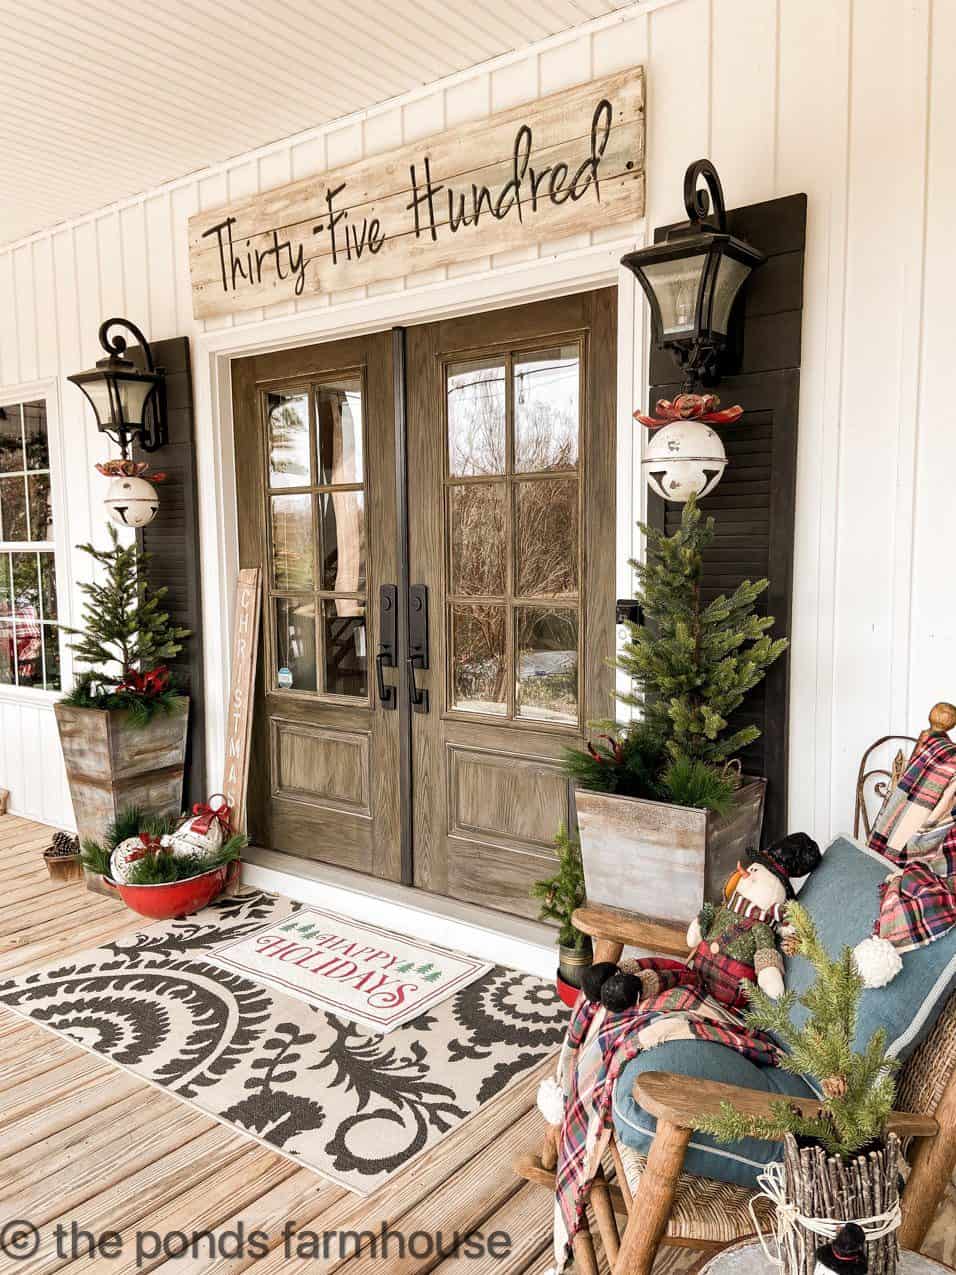 https://www.thepondsfarmhouse.com/wp-content/uploads/2021/11/Farmhouse-Christmas-Porch-Ideas-1.jpg